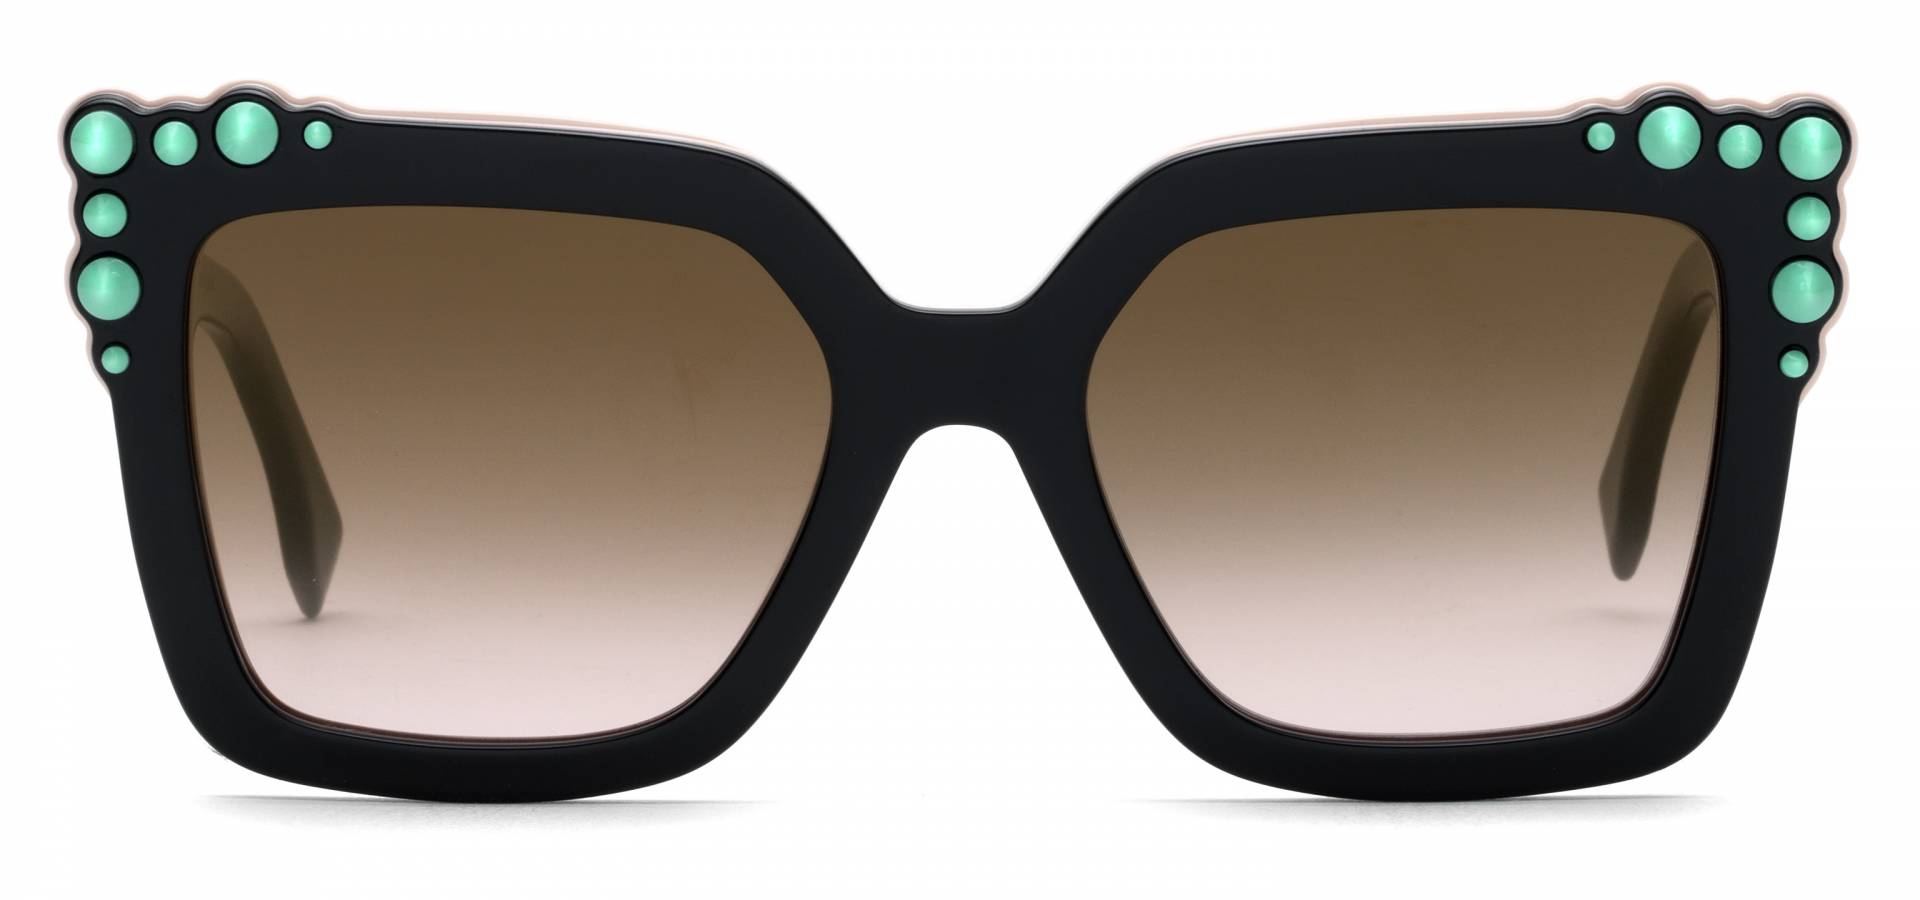 Sunčane naočale Fendi FF 0260/S: Boja: Black Pink, Veličina: 52/19/145, Spol: ženske, Materijal: acetat